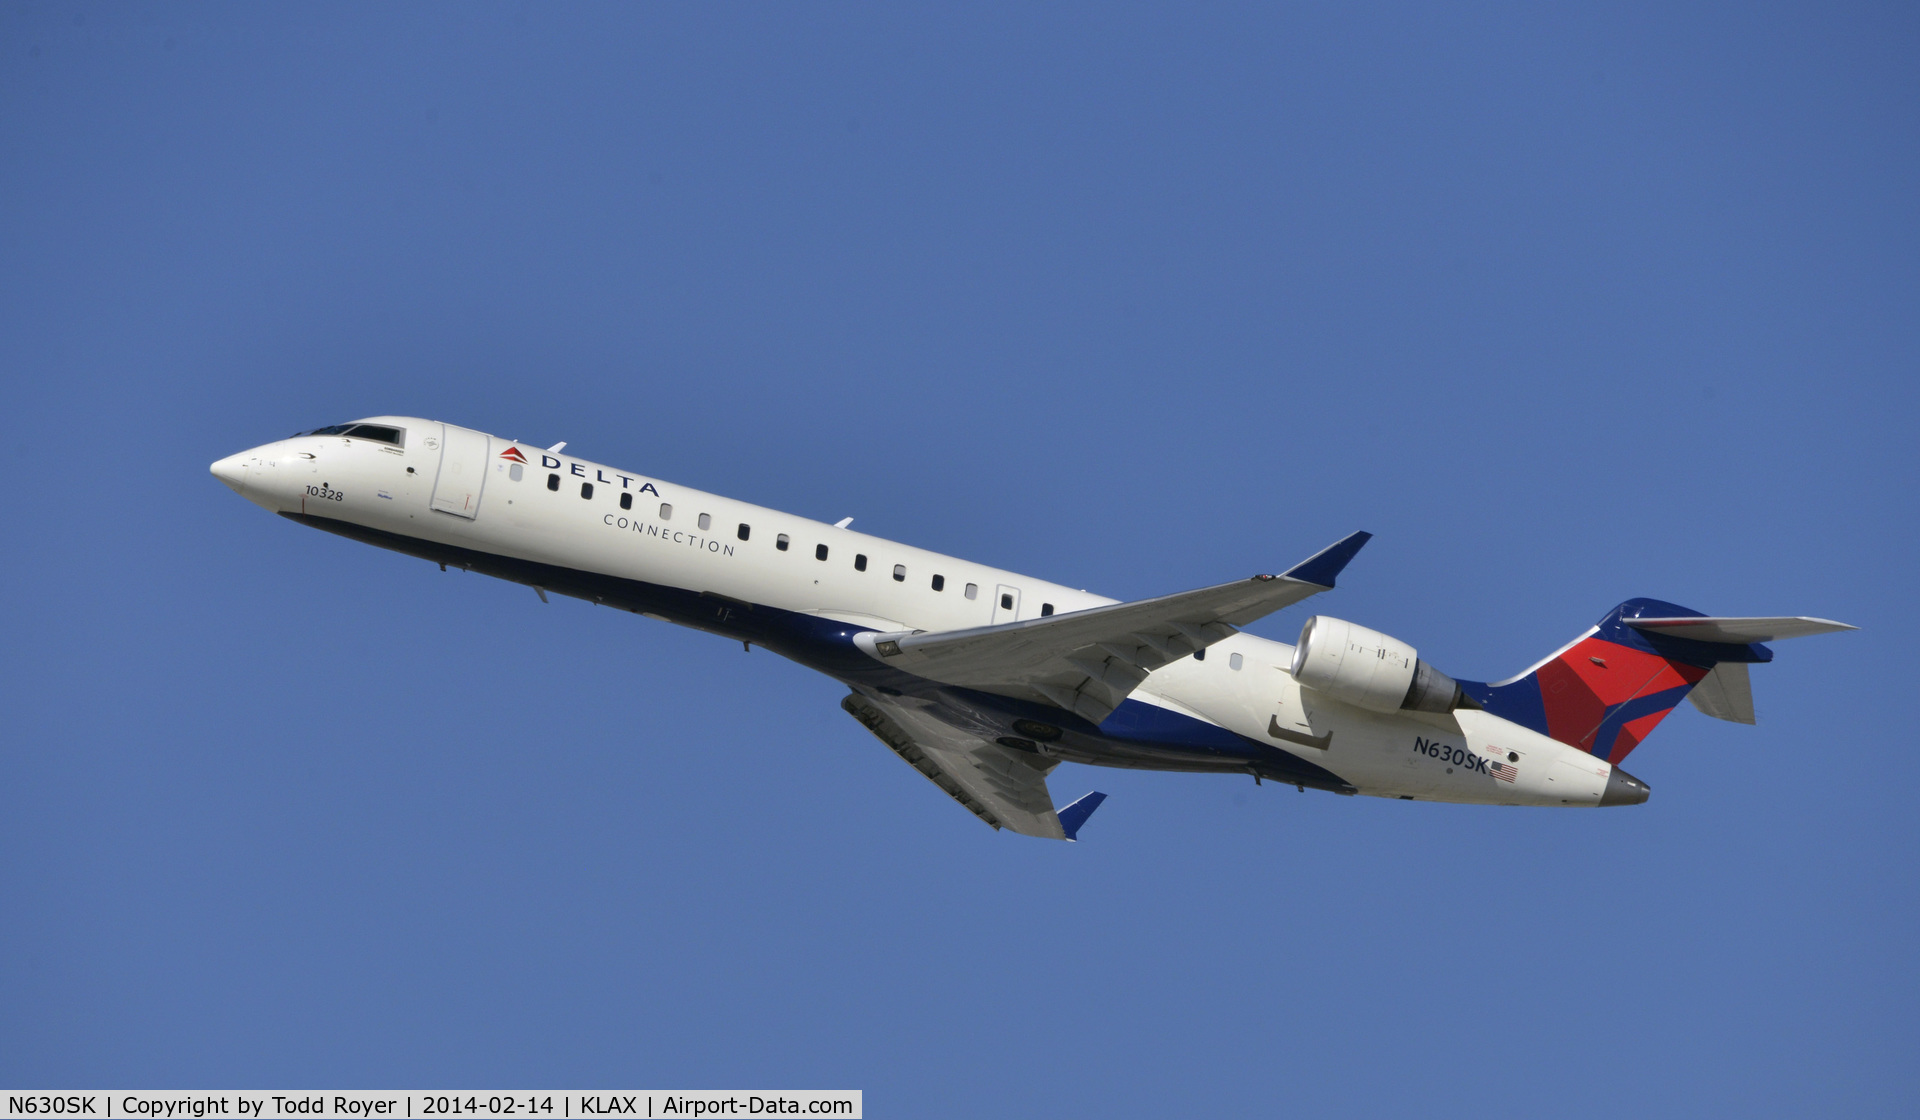 N630SK, 2011 Bombardier CRJ-700 (CL-600-2C10) Regional Jet C/N 10328, Departing LAX on 25R